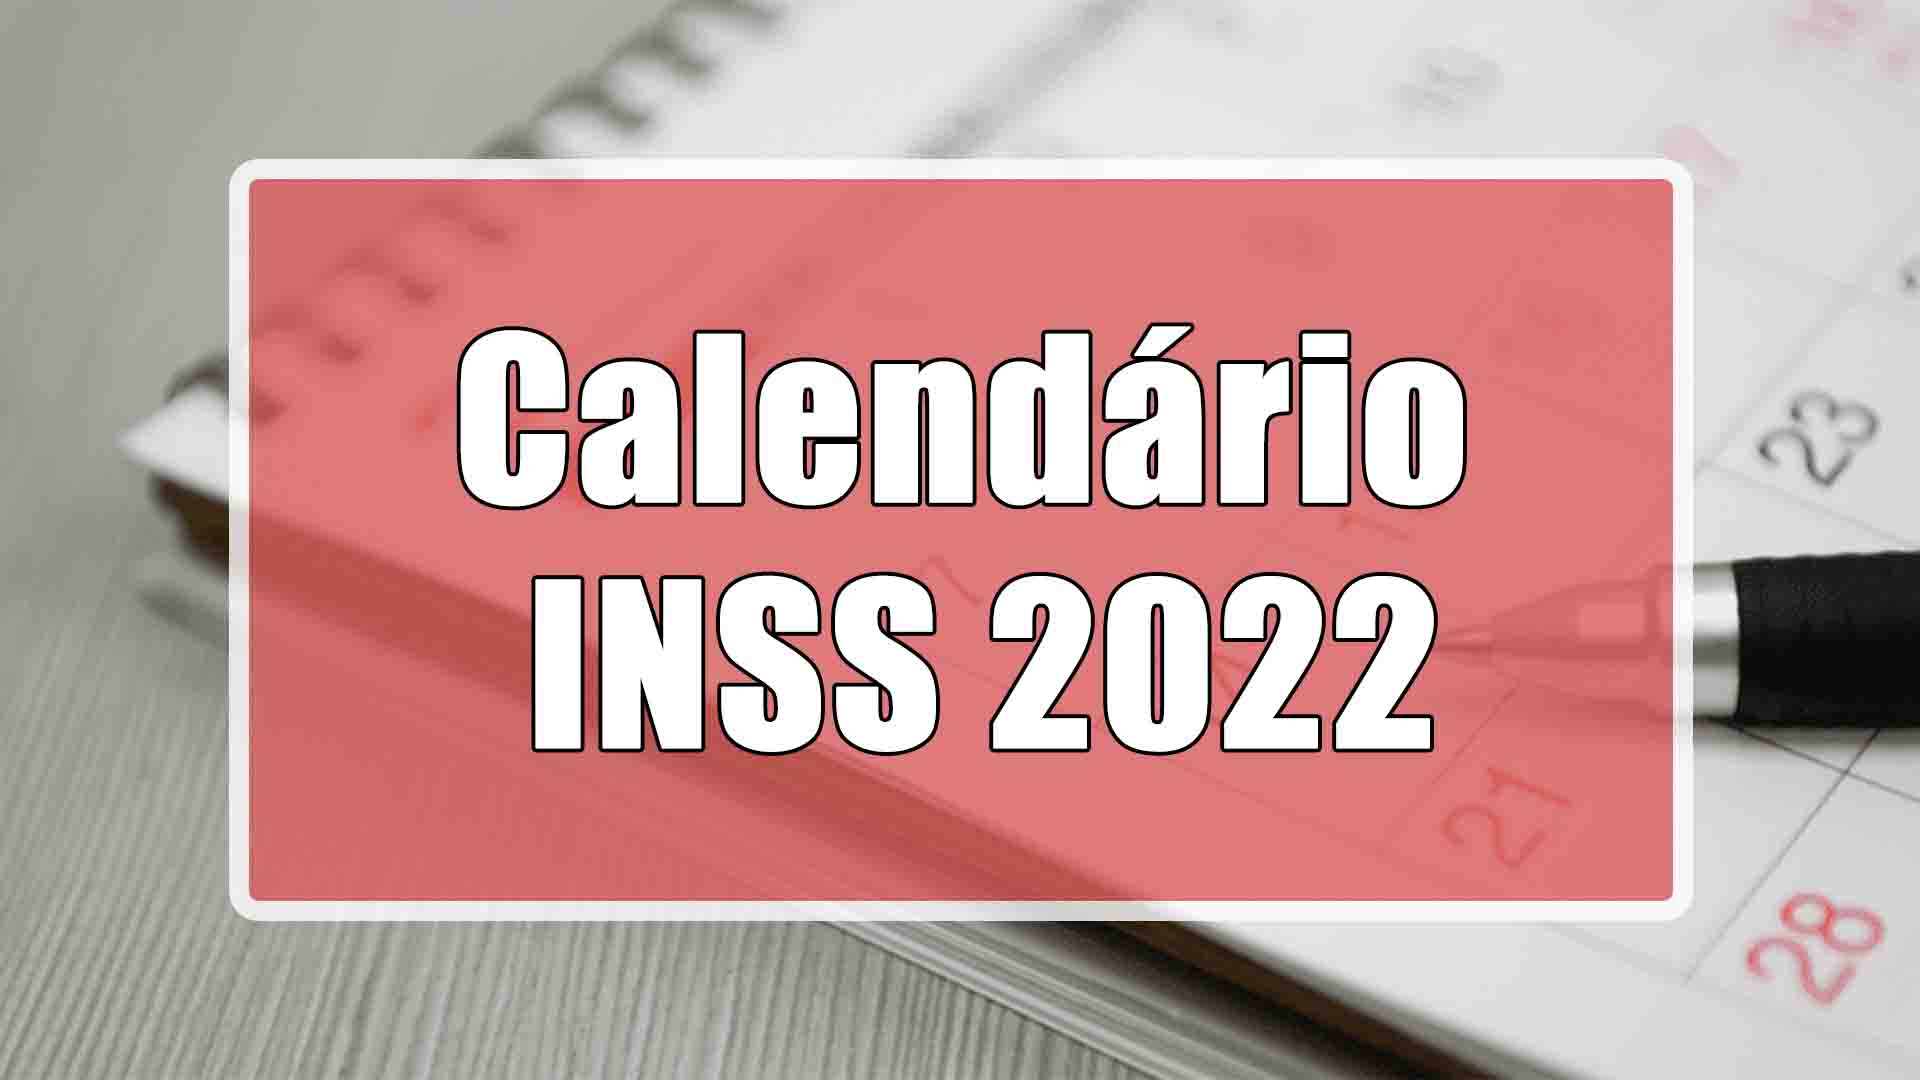 Está disponível para os segurados do INSS consultarem quando vai estar liberado os pagamentos de seus respectivos benefícios em 2022! Confira: